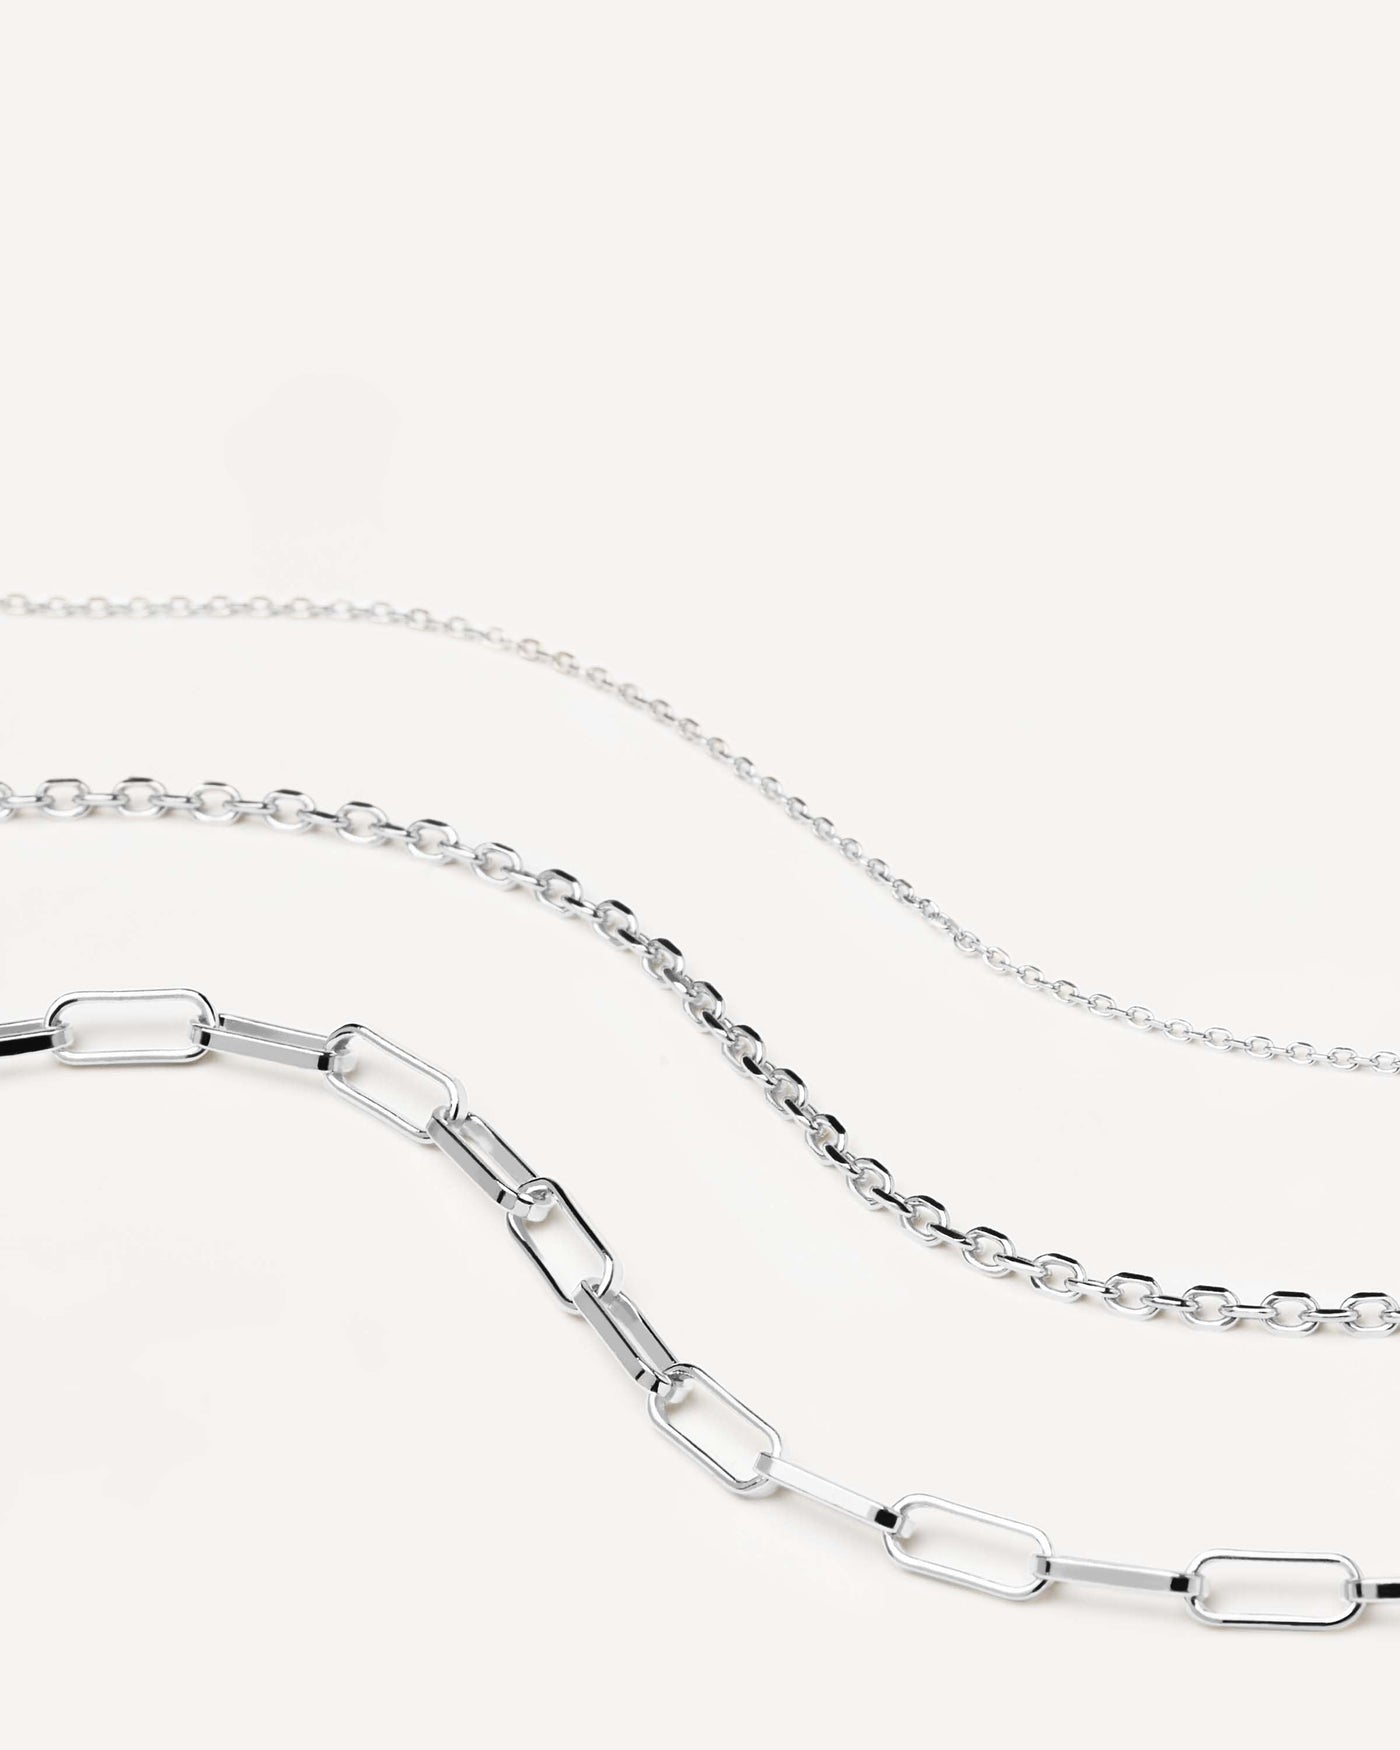 Set de collares de plata Essential. conjunto de collares apilables de cadena de plata esterlina 925 en eslabones de tres tamaños y formas. Consigue las últimas novedades de PDPAOLA. Haz tu pedido de forma segura y obtén este Best Seller.